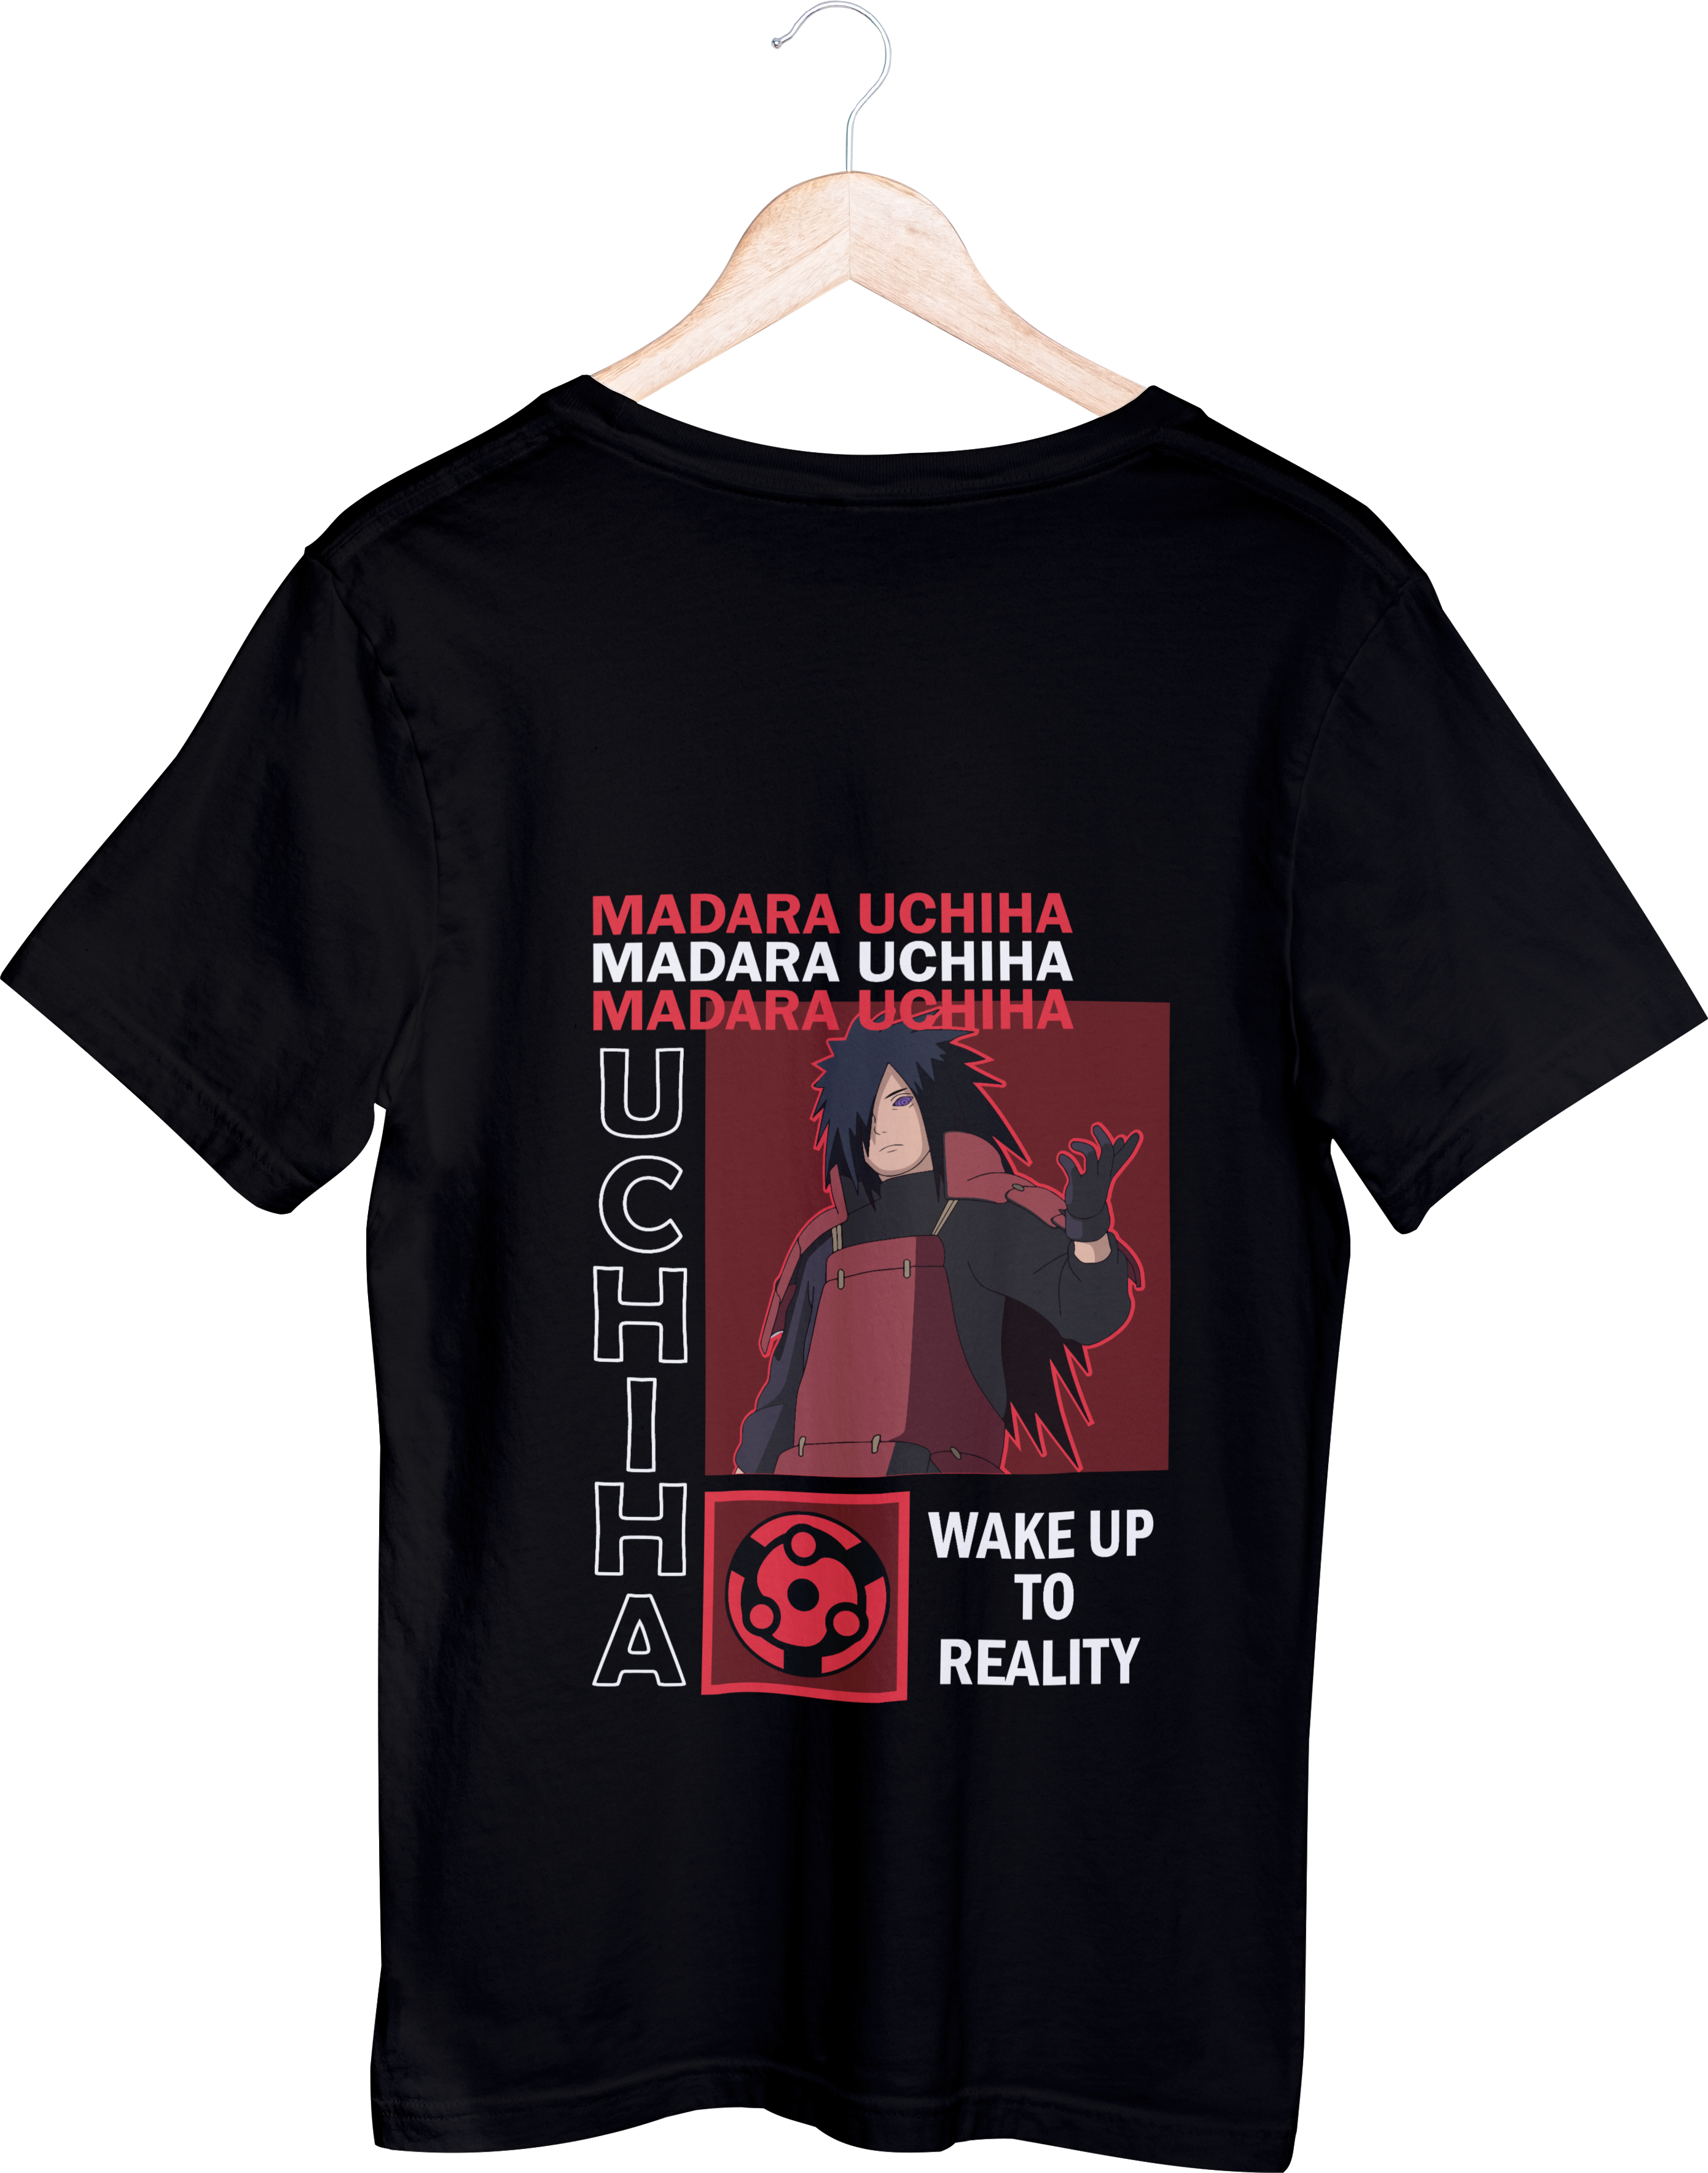 Naruto Tops - חולצה מאדארה משפט - נארוטו